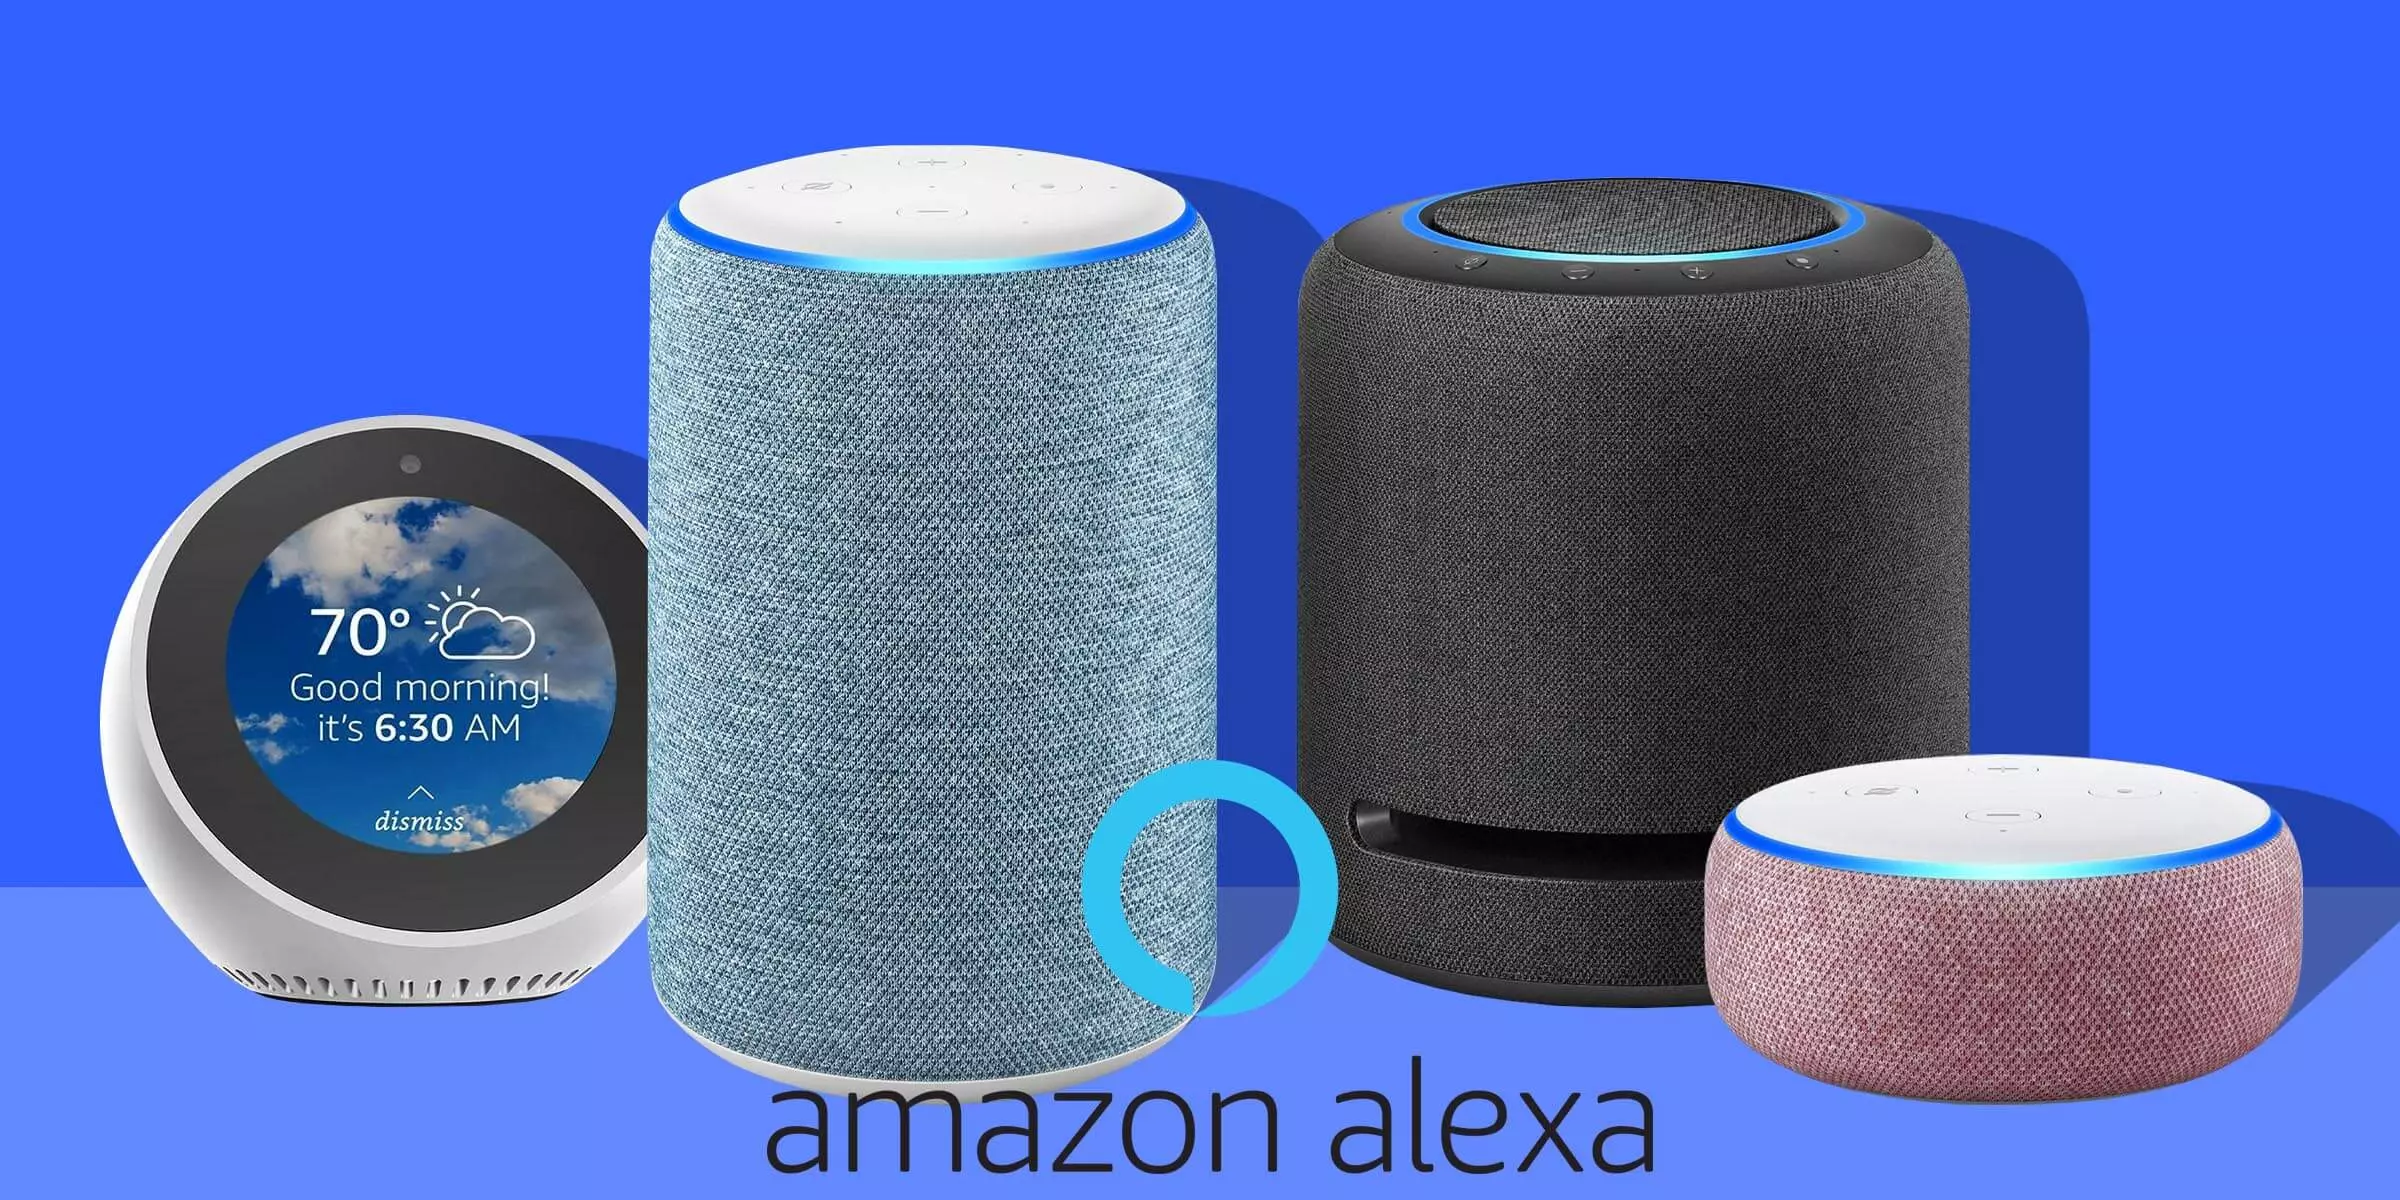 Puis-je renommer Alexa sur mon Amazon Echo